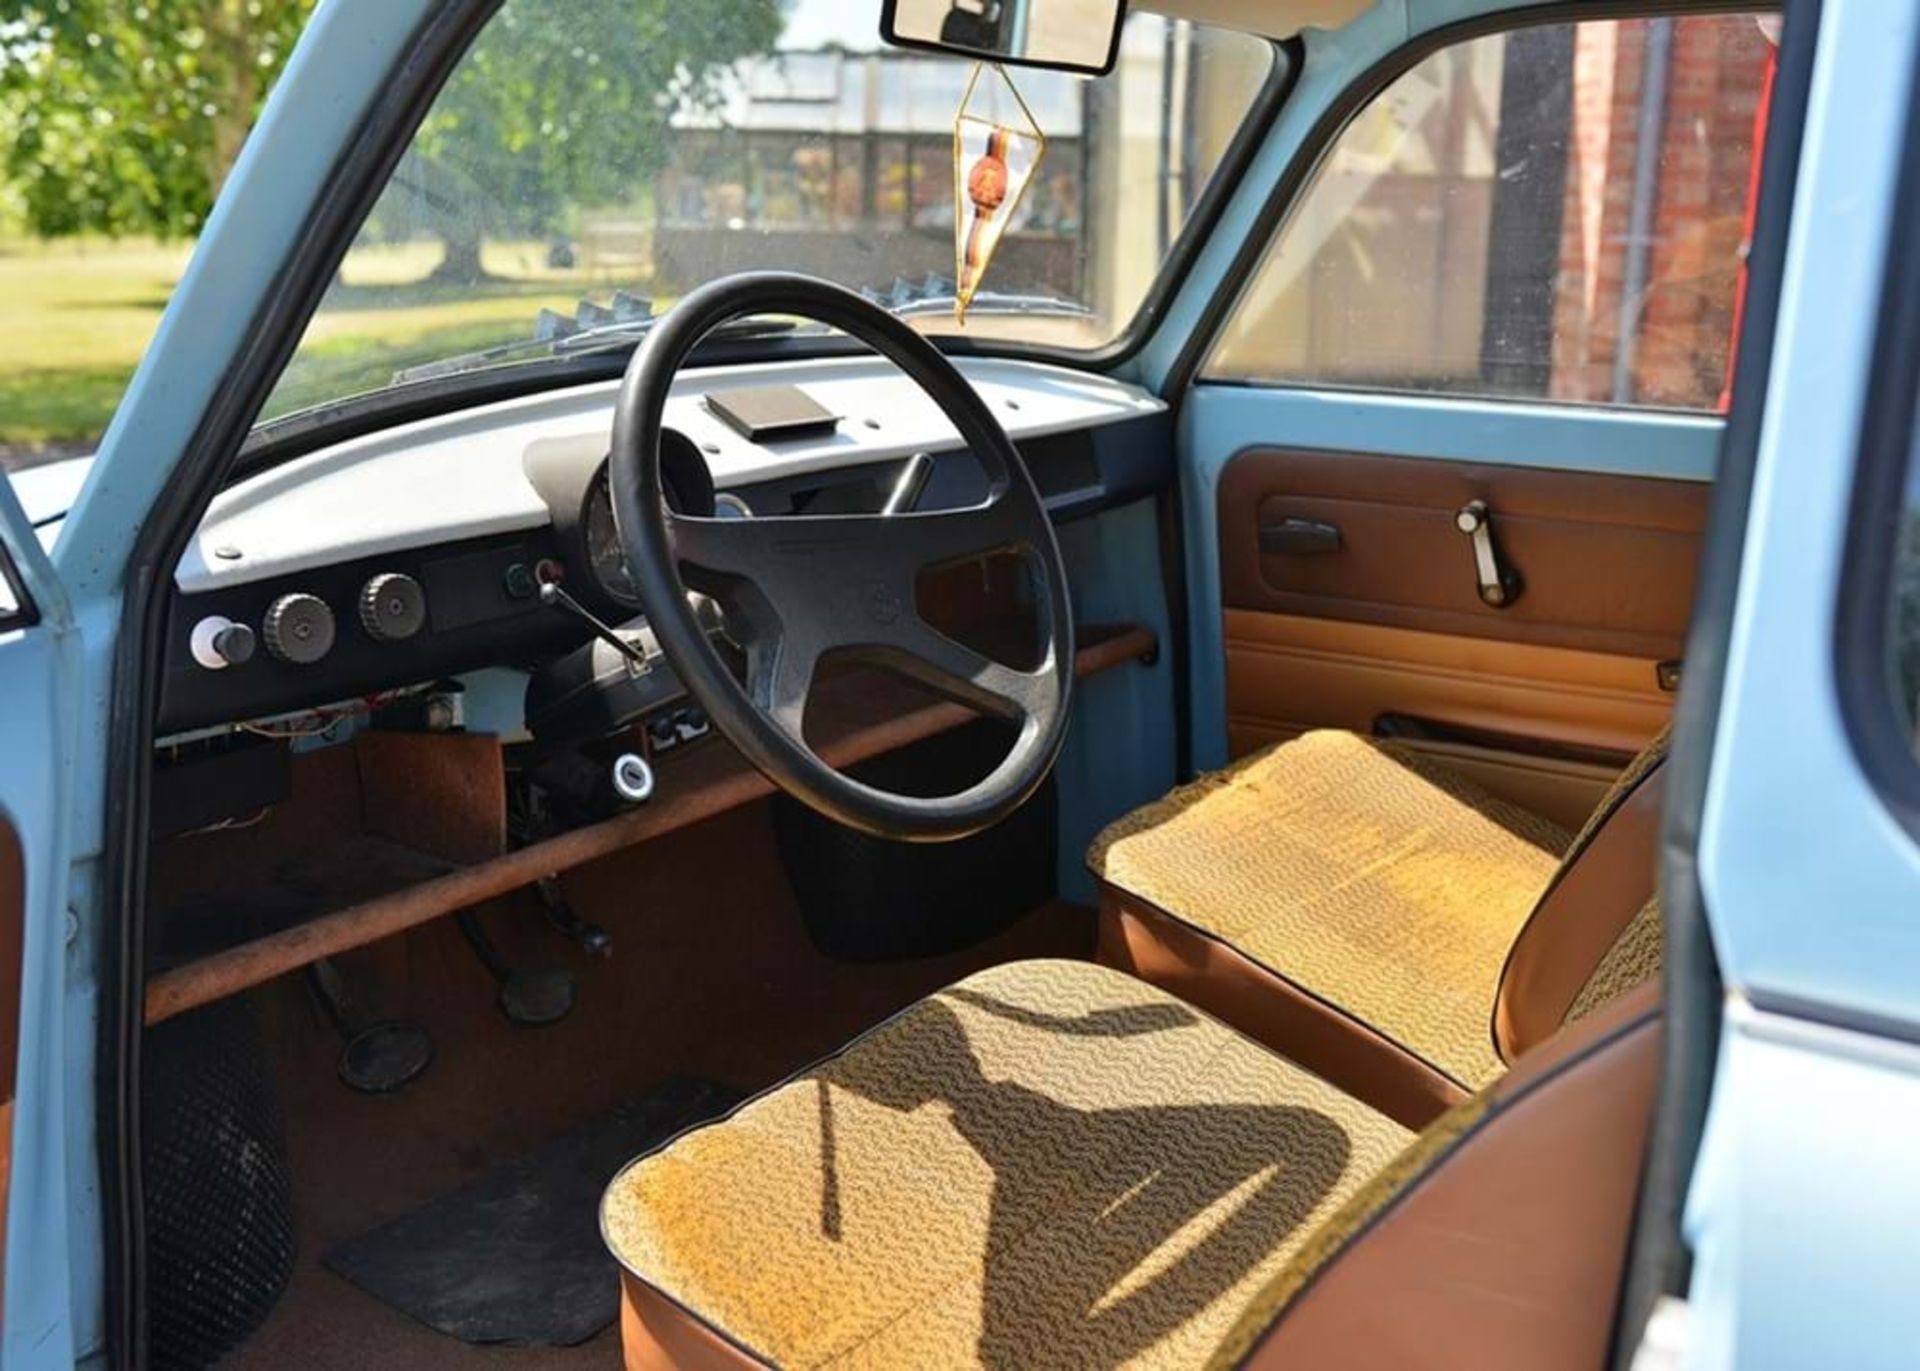 1986 Trabant P601 Kombi Estate - Image 4 of 9